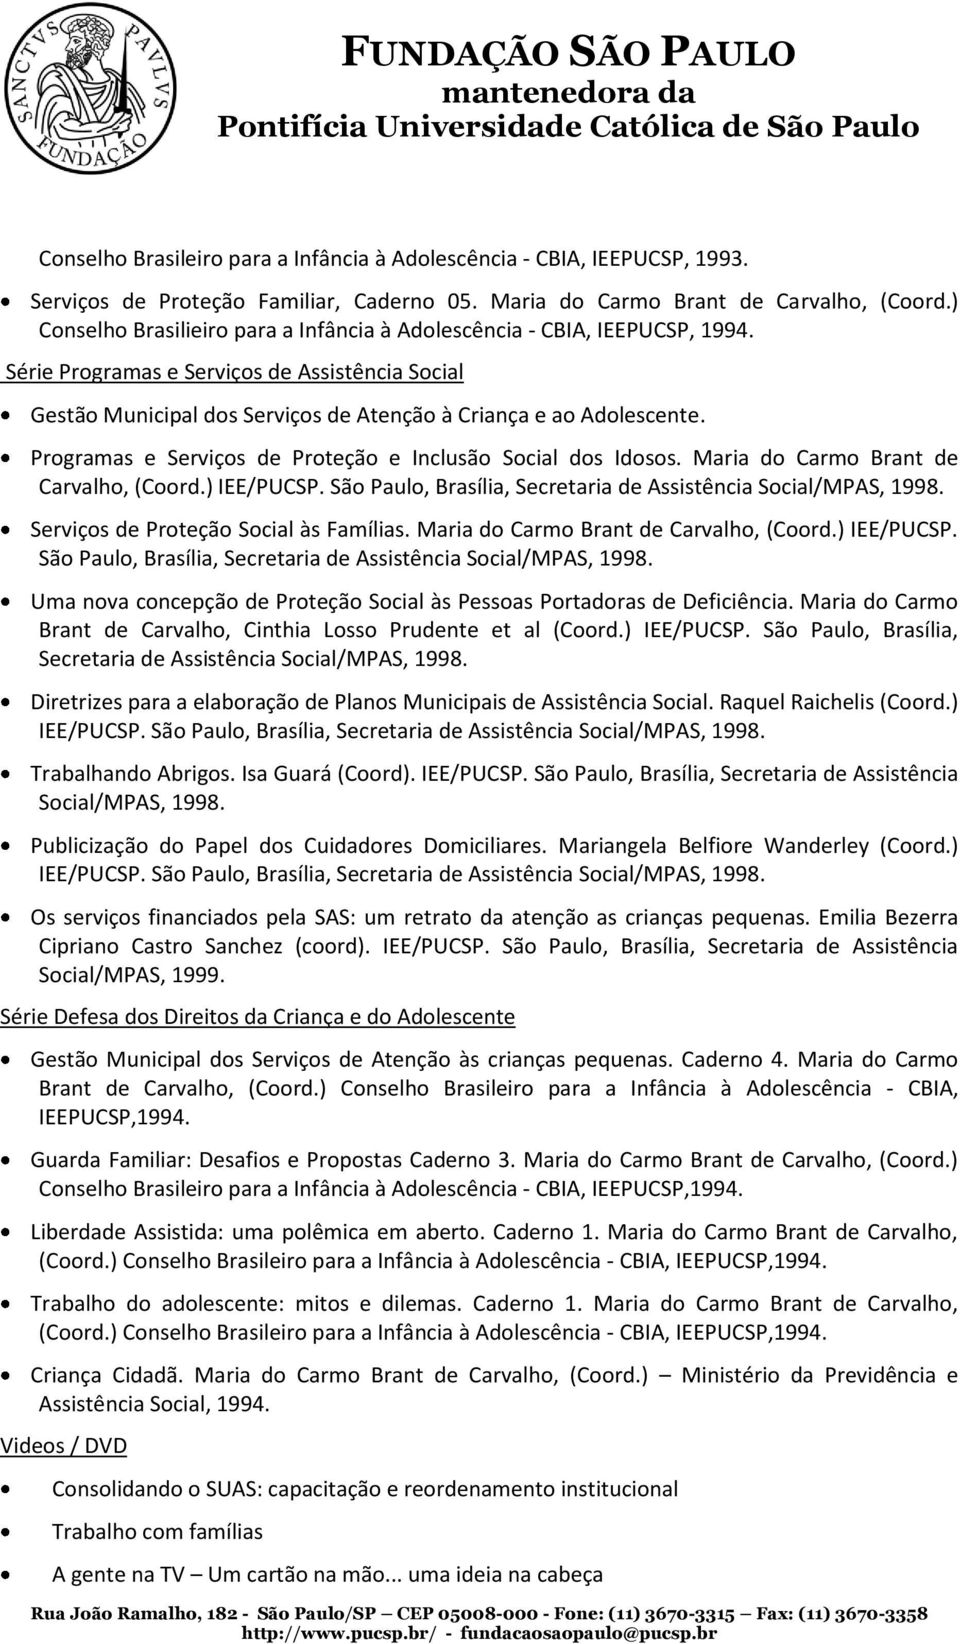 Programas e Serviços de Proteção e Inclusão Social dos Idosos. Maria do Carmo Brant de Carvalho, (Coord.) IEE/PUCSP. São Paulo, Brasília, Secretaria de Assistência Social/MPAS, 1998.